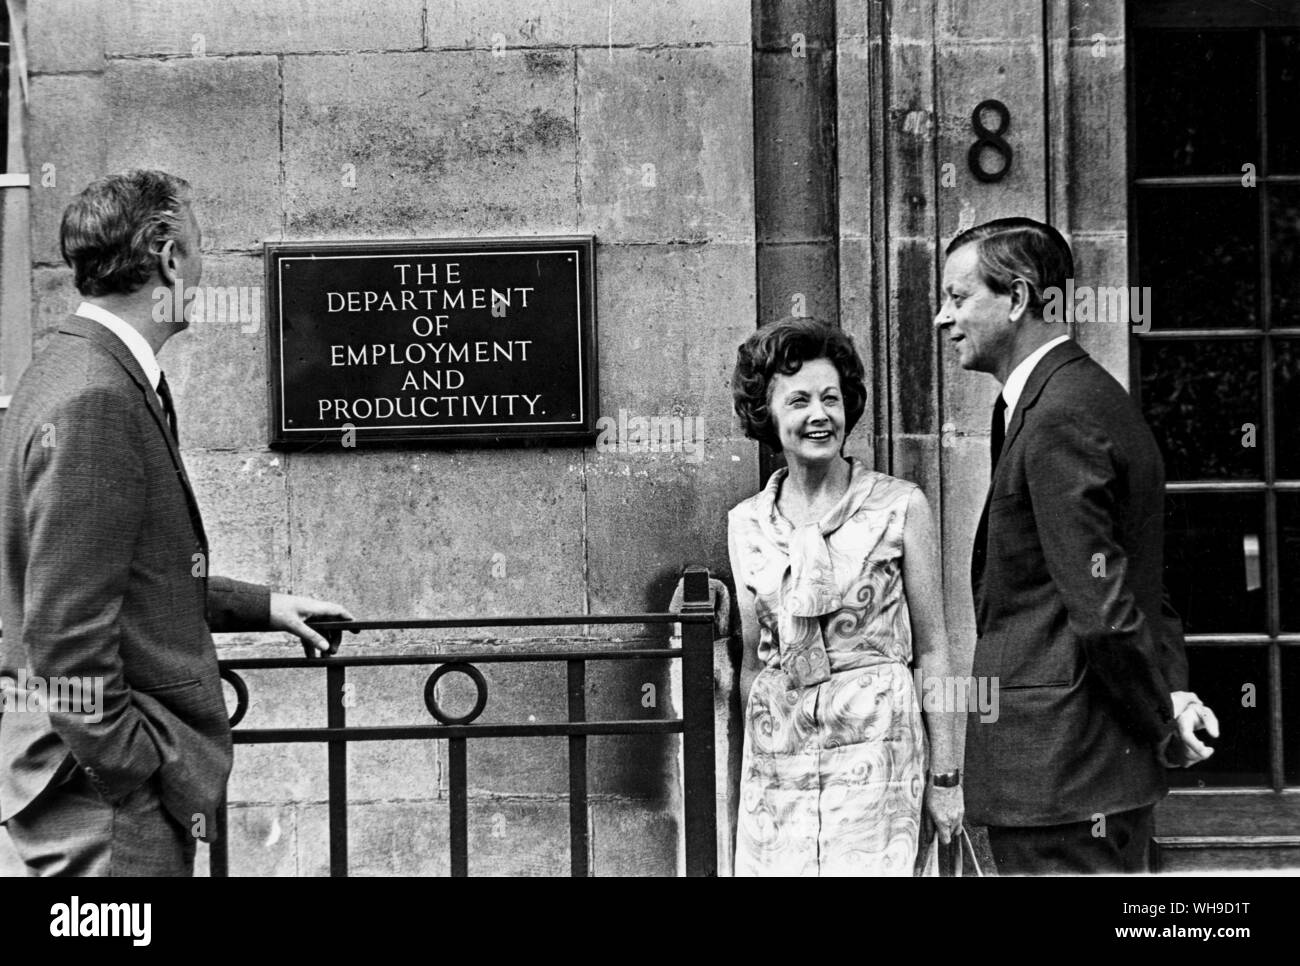 15 Maggio 1968: la onorevole Barbara Castle, nato nel 1911, il ministro del Lavoro e della produttività, con la sua cima aiutanti presso il ministero, Sir Denis Barnes, segretario permanente (sinistra) e Alex Jarrat (a destra), raffigurato presso il ministero. Foto Stock